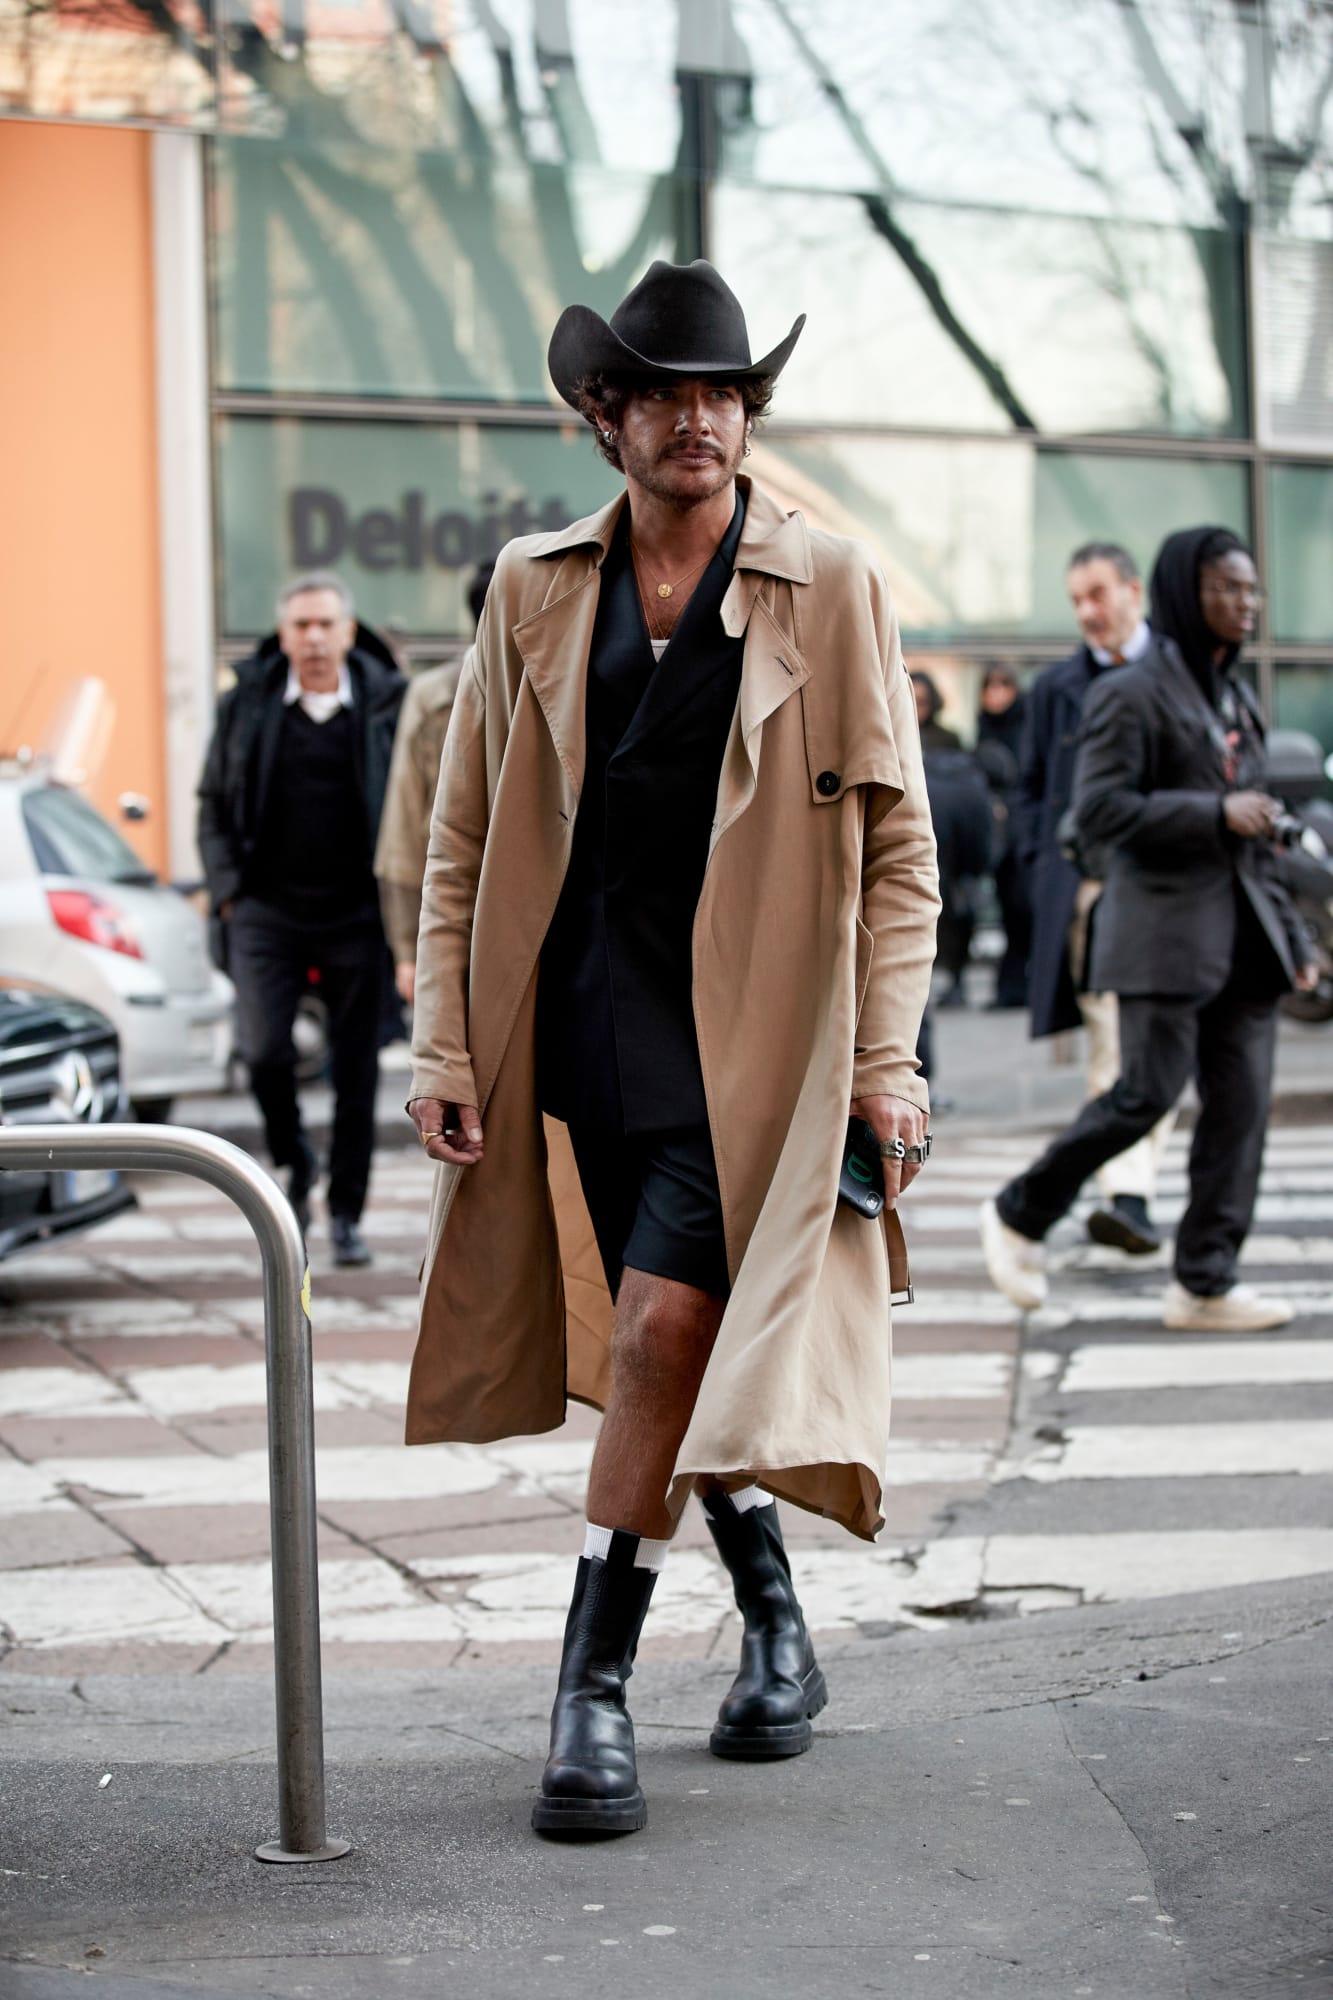 Milan Fashion week men's street looks